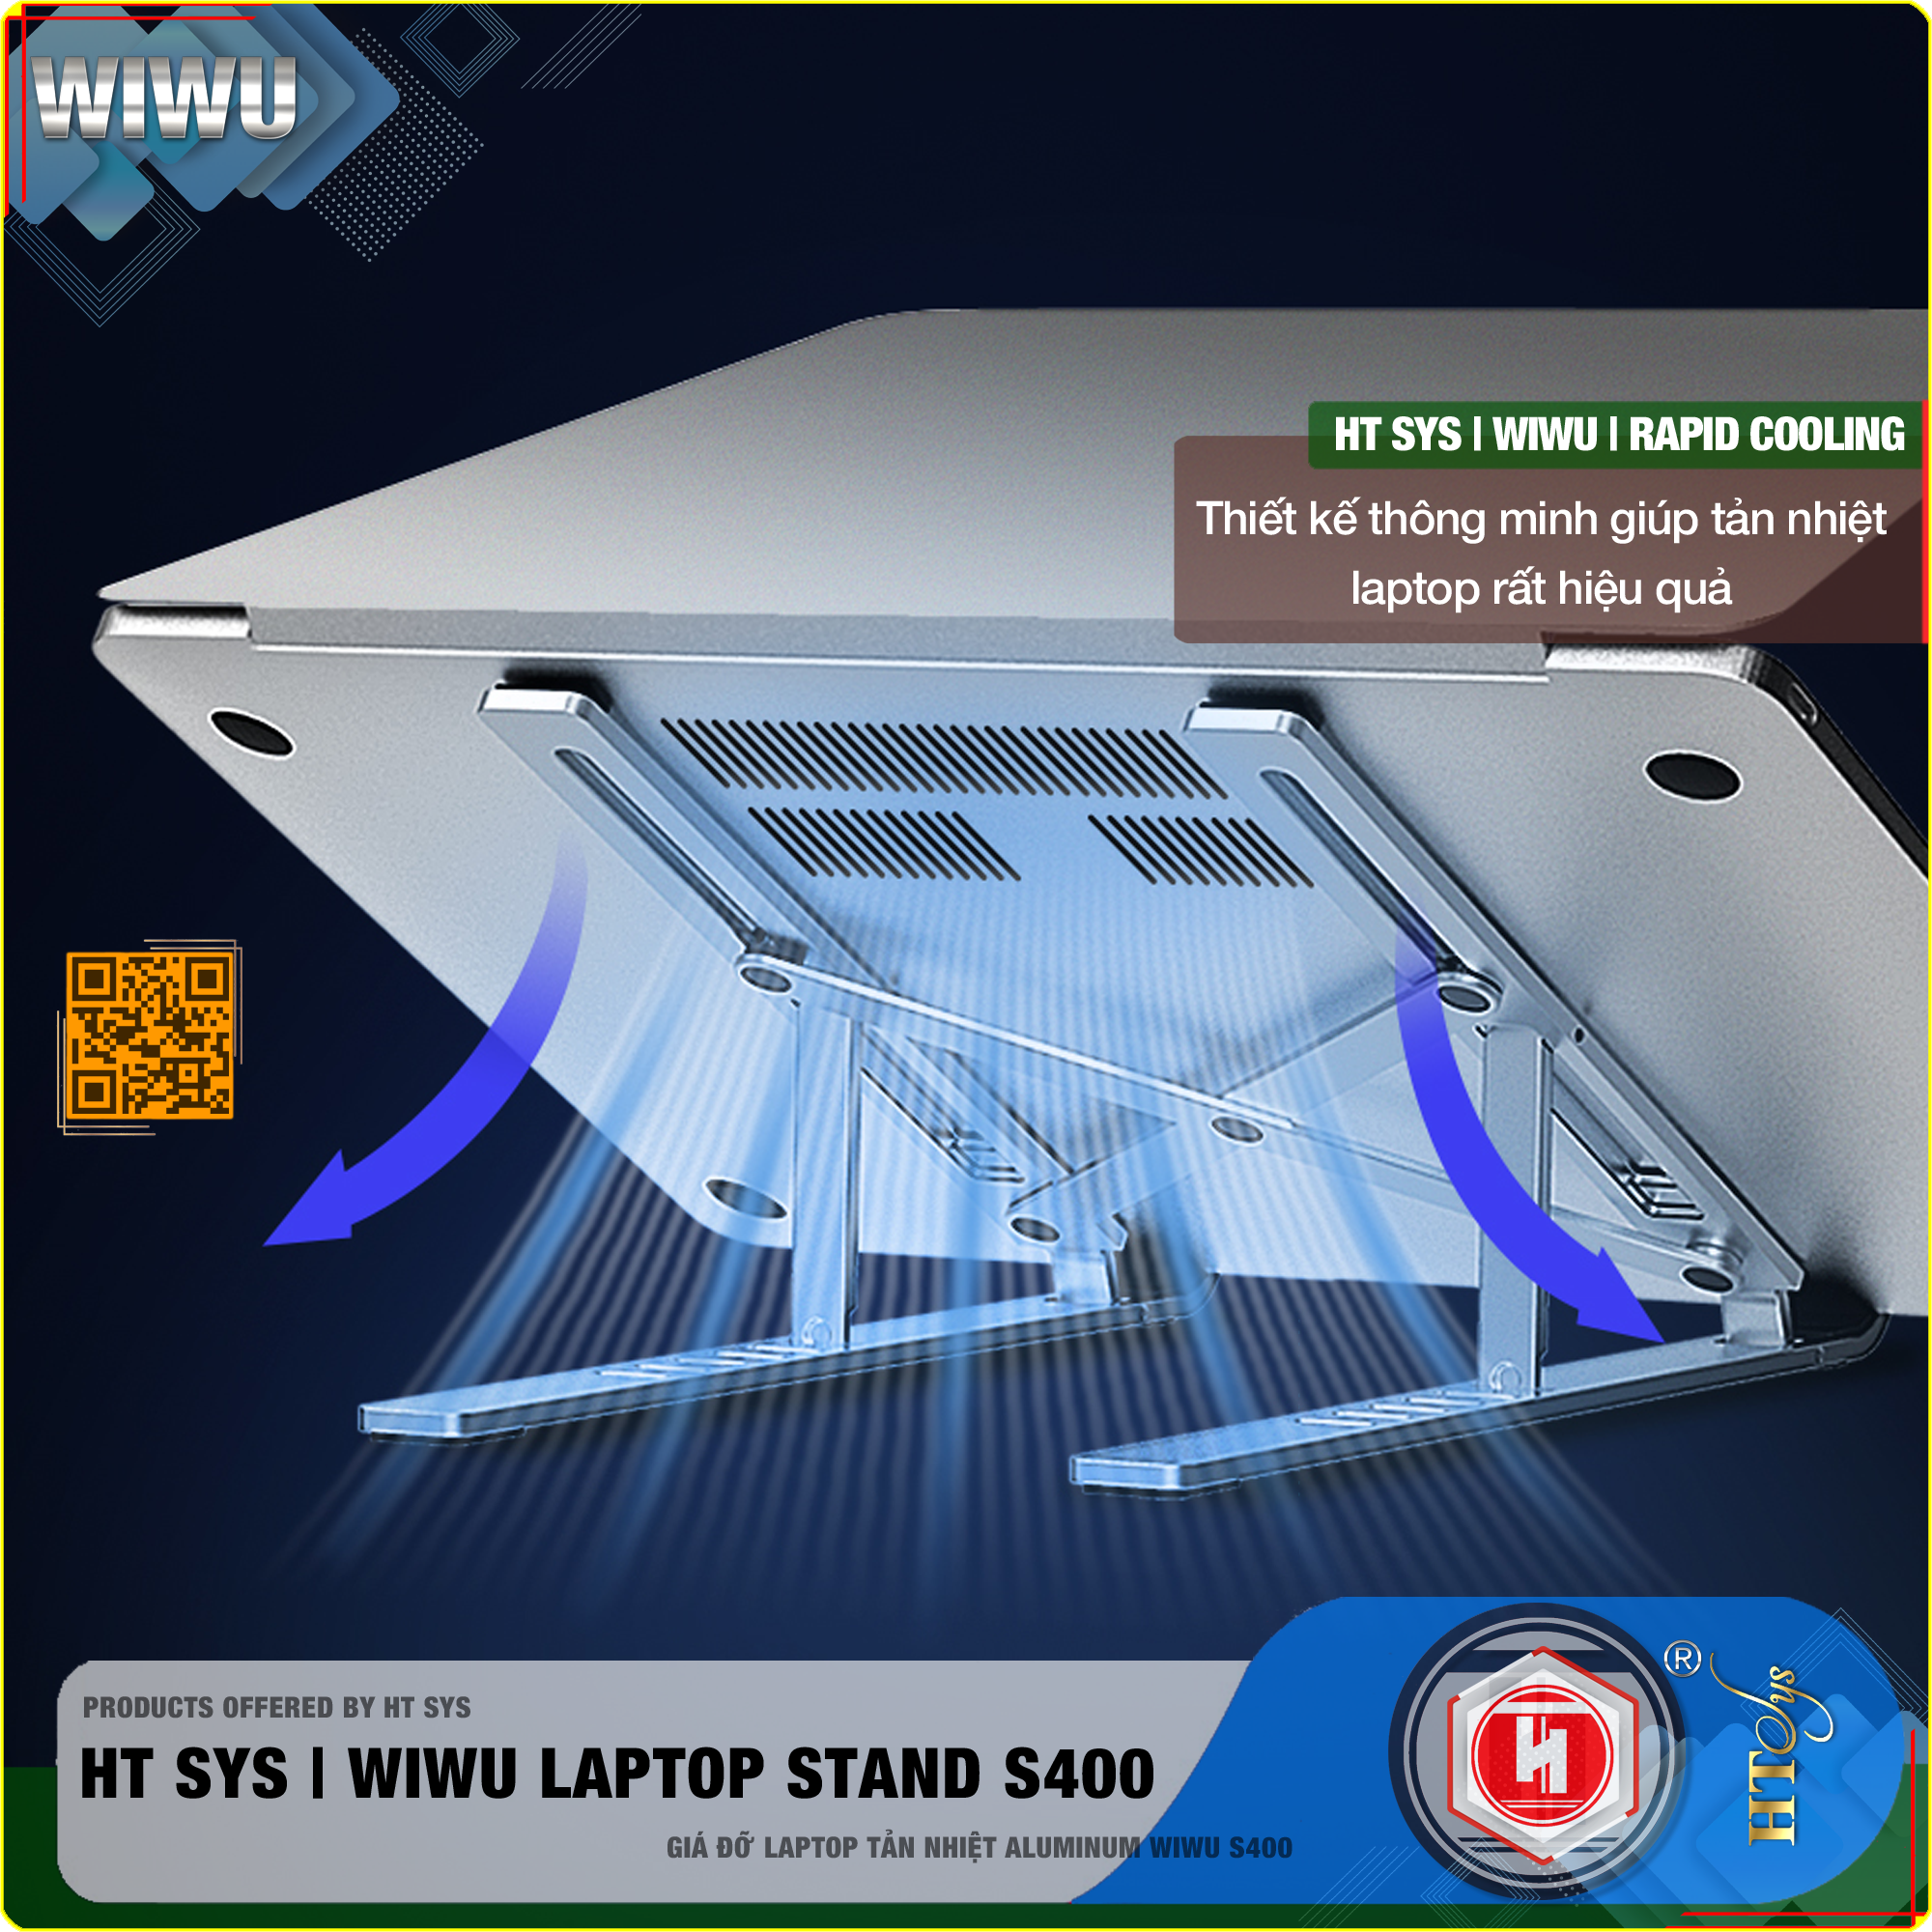 Giá đỡ laptop gấp gọn HT SYS wiwu LAPTOP stand S400-Hợp kim nhôm cao cấp-Đế tản nhiệt laptop, macbook, máy tính xách tay-06 Chế độ điều chỉnh góc độ-Hỗ trợ máy 13 inch đến 15,6 inch và tất cả máy tính bảng-[Hàng Nhập Khẩu]